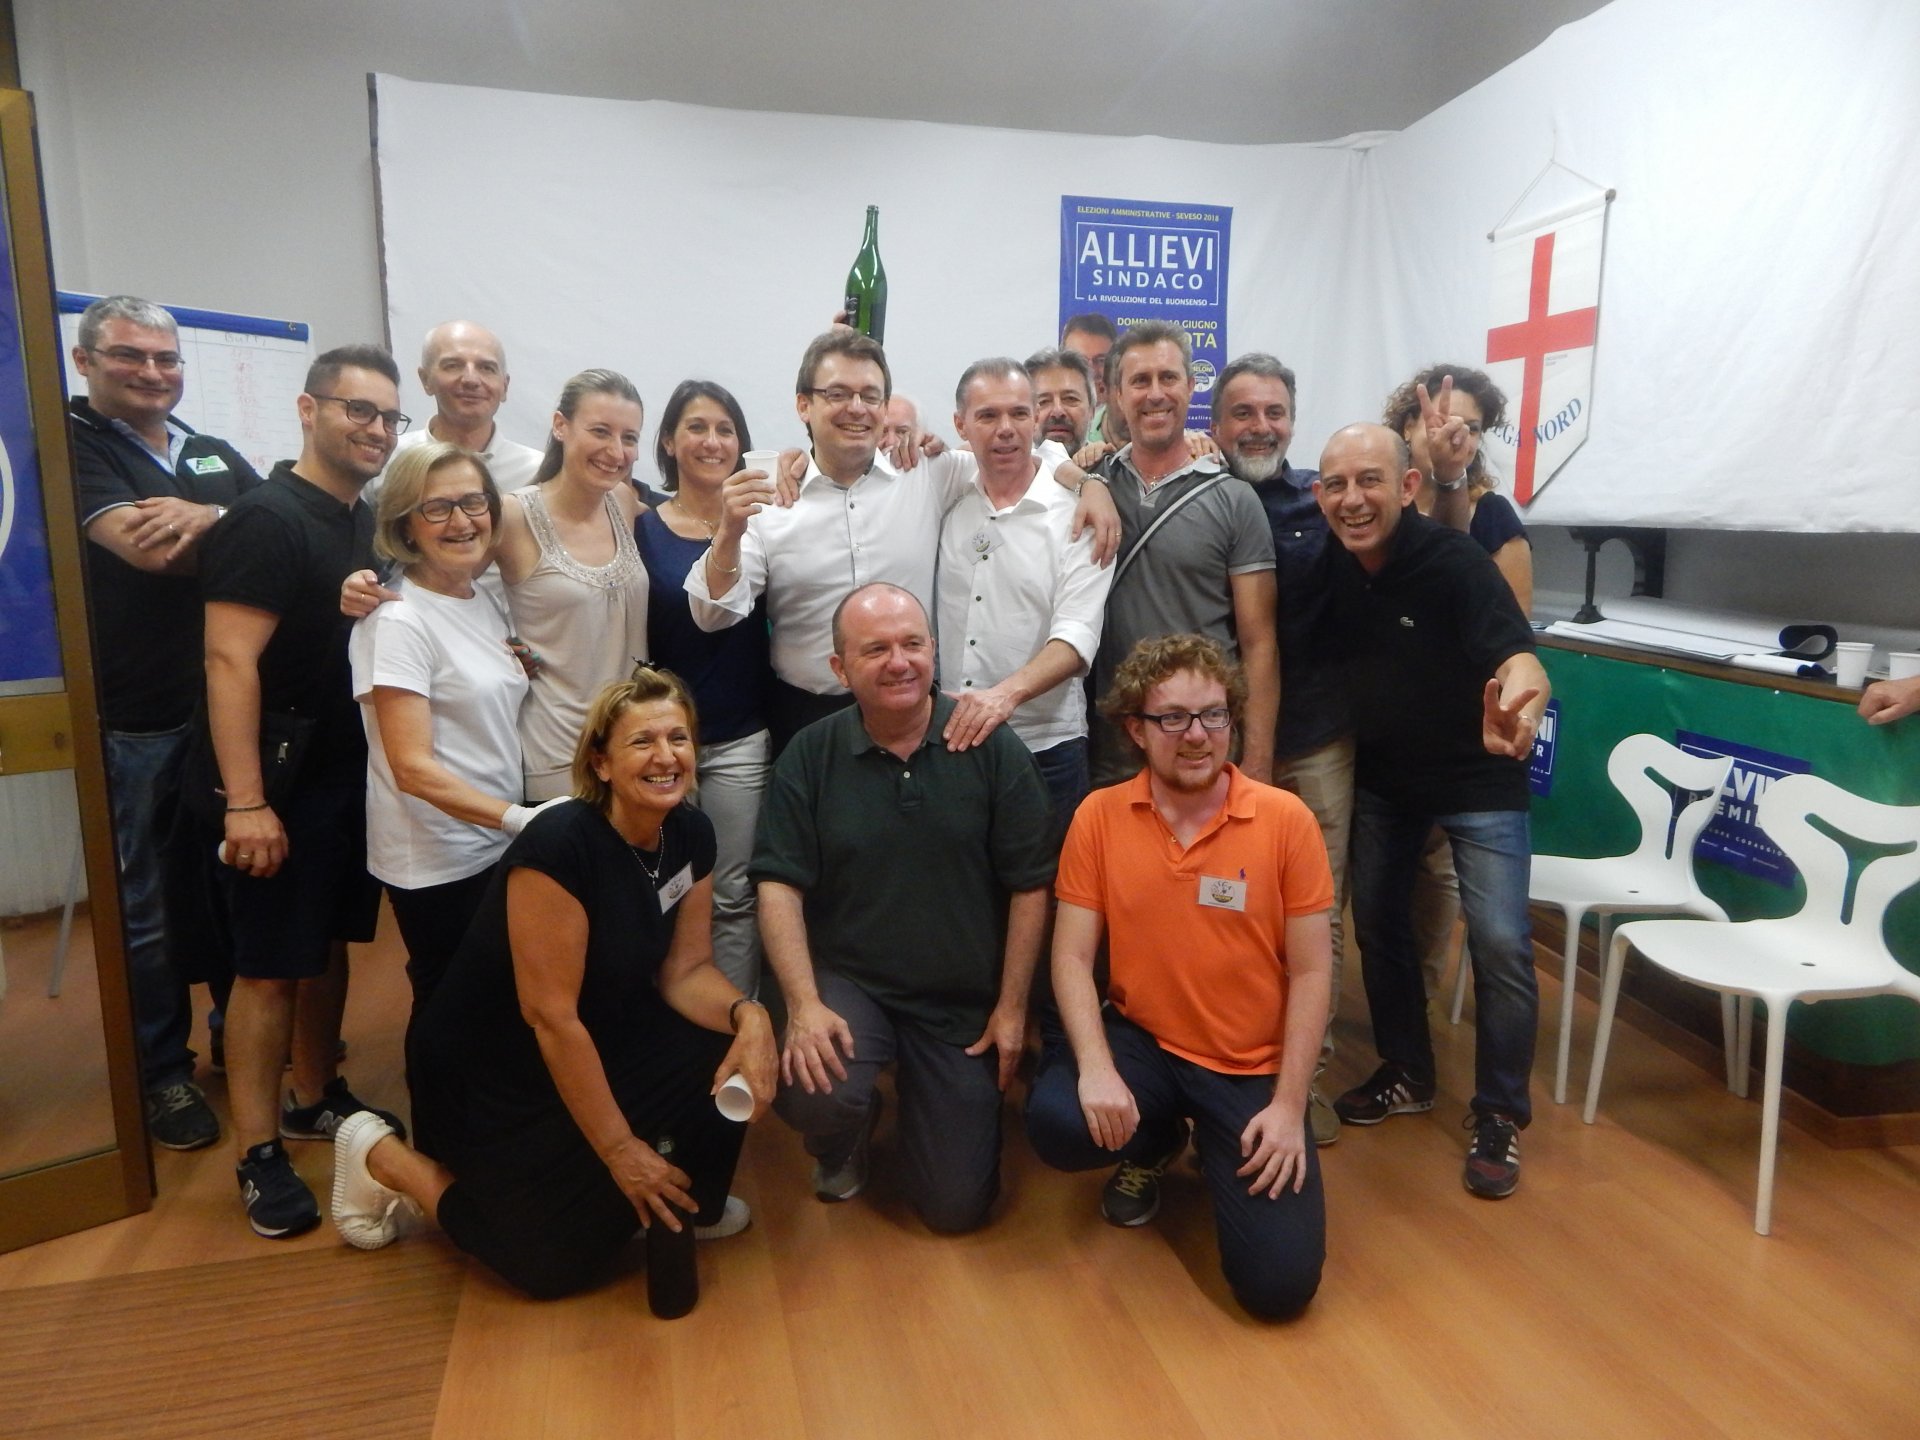 Seveso: i festeggiamenti del nuovo sindaco Luca Allievi